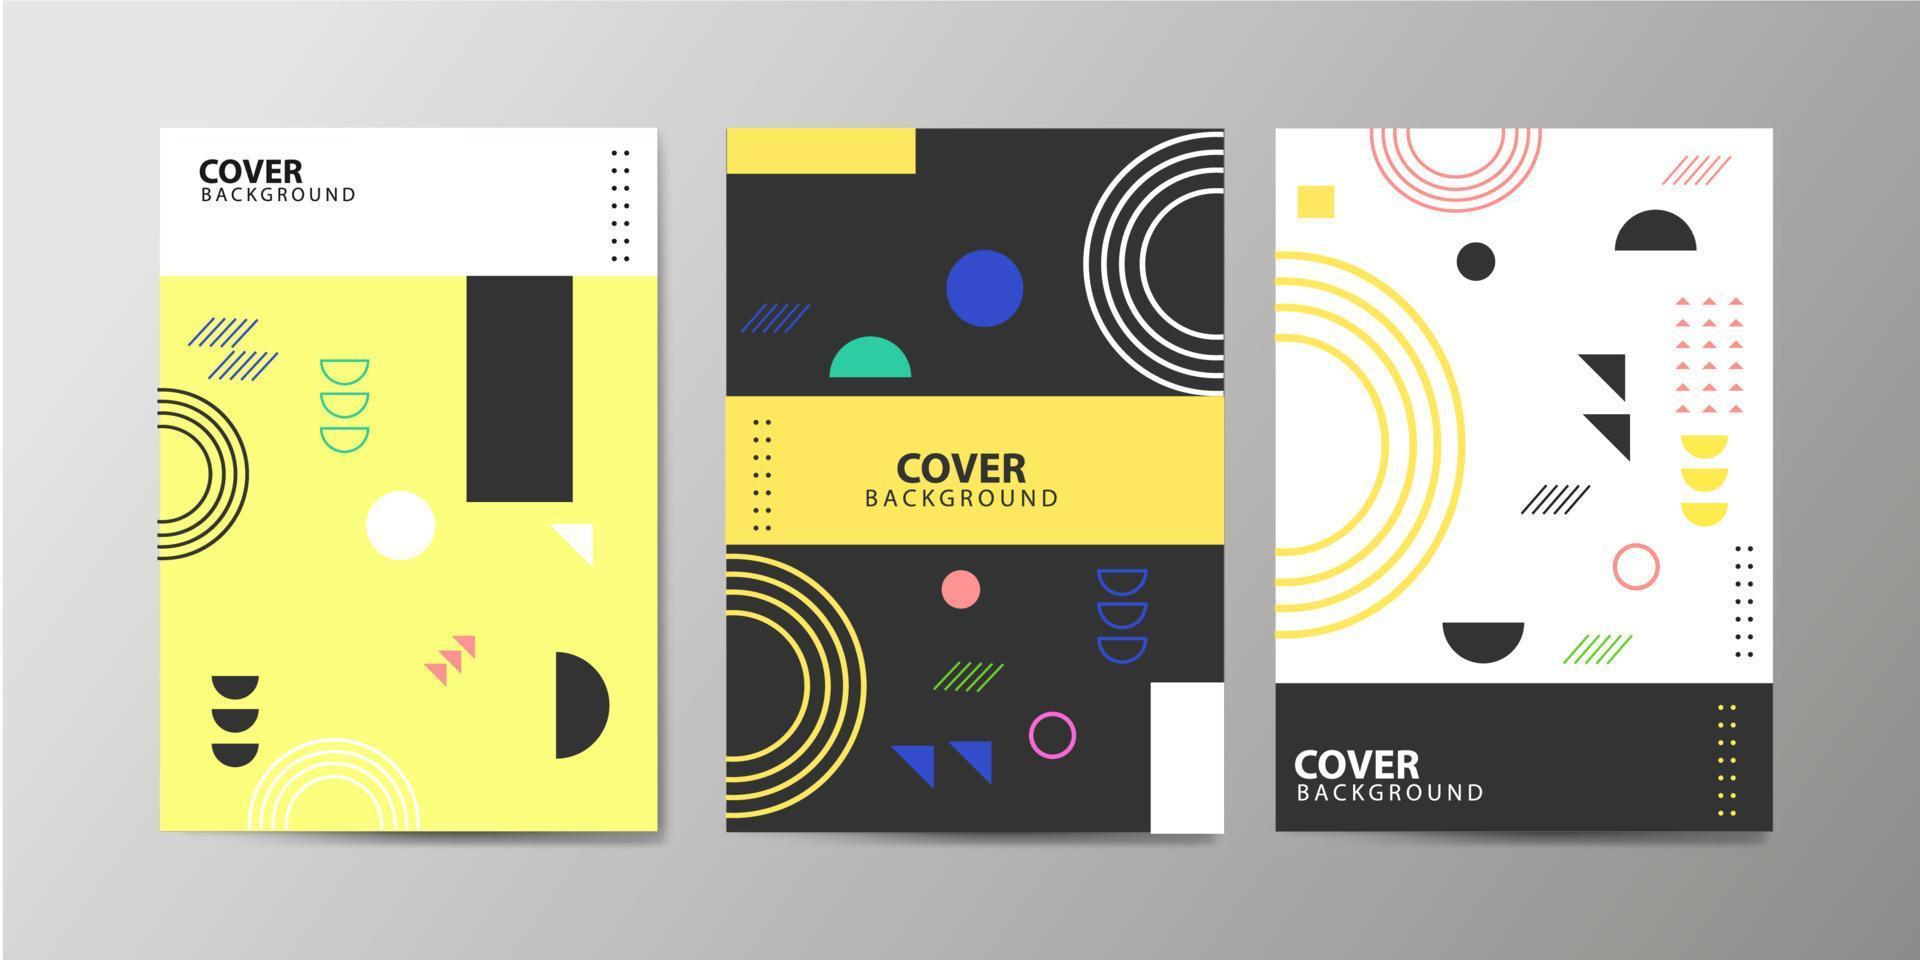 covers met minimaal ontwerp. coole geometrische achtergronden voor uw ontwerp. toepasbaar voor banners, plakkaten, posters, flyers etc. eps10 vector